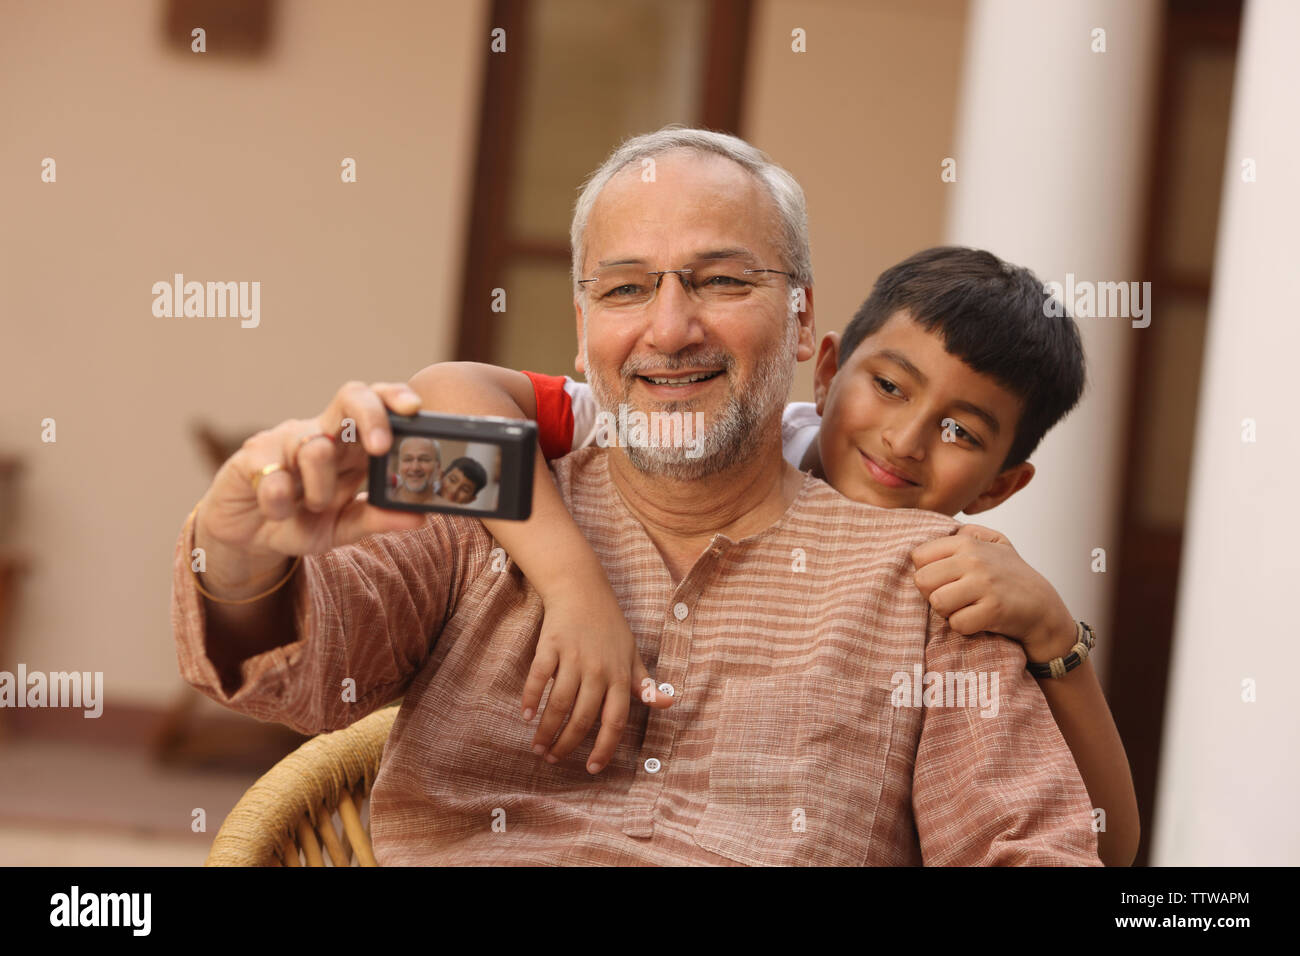 Hombre con su nieto tomando fotos de sí mismos Foto de stock